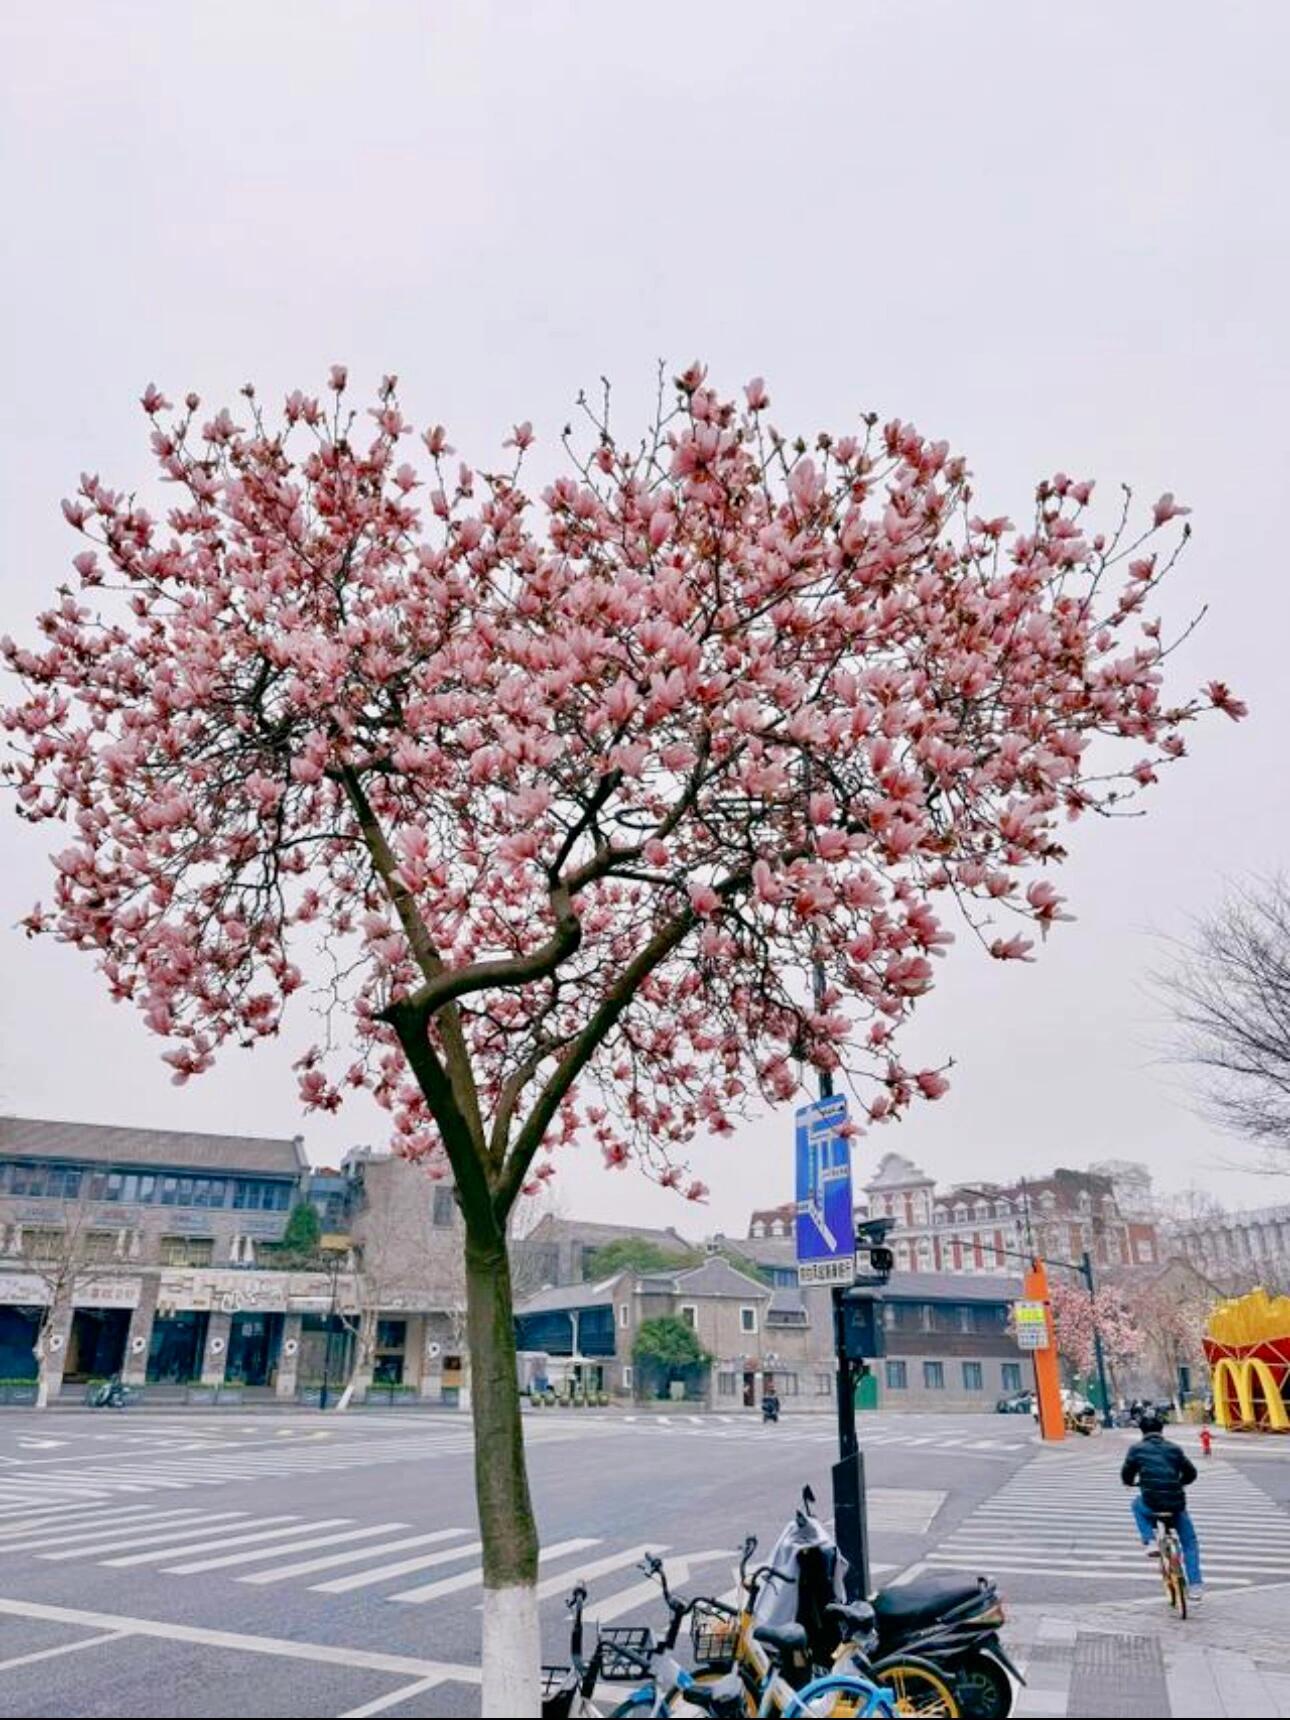 即武林路六公园公交站旁,一株酷似爱心状的玉兰树亭亭玉立,花开正盛